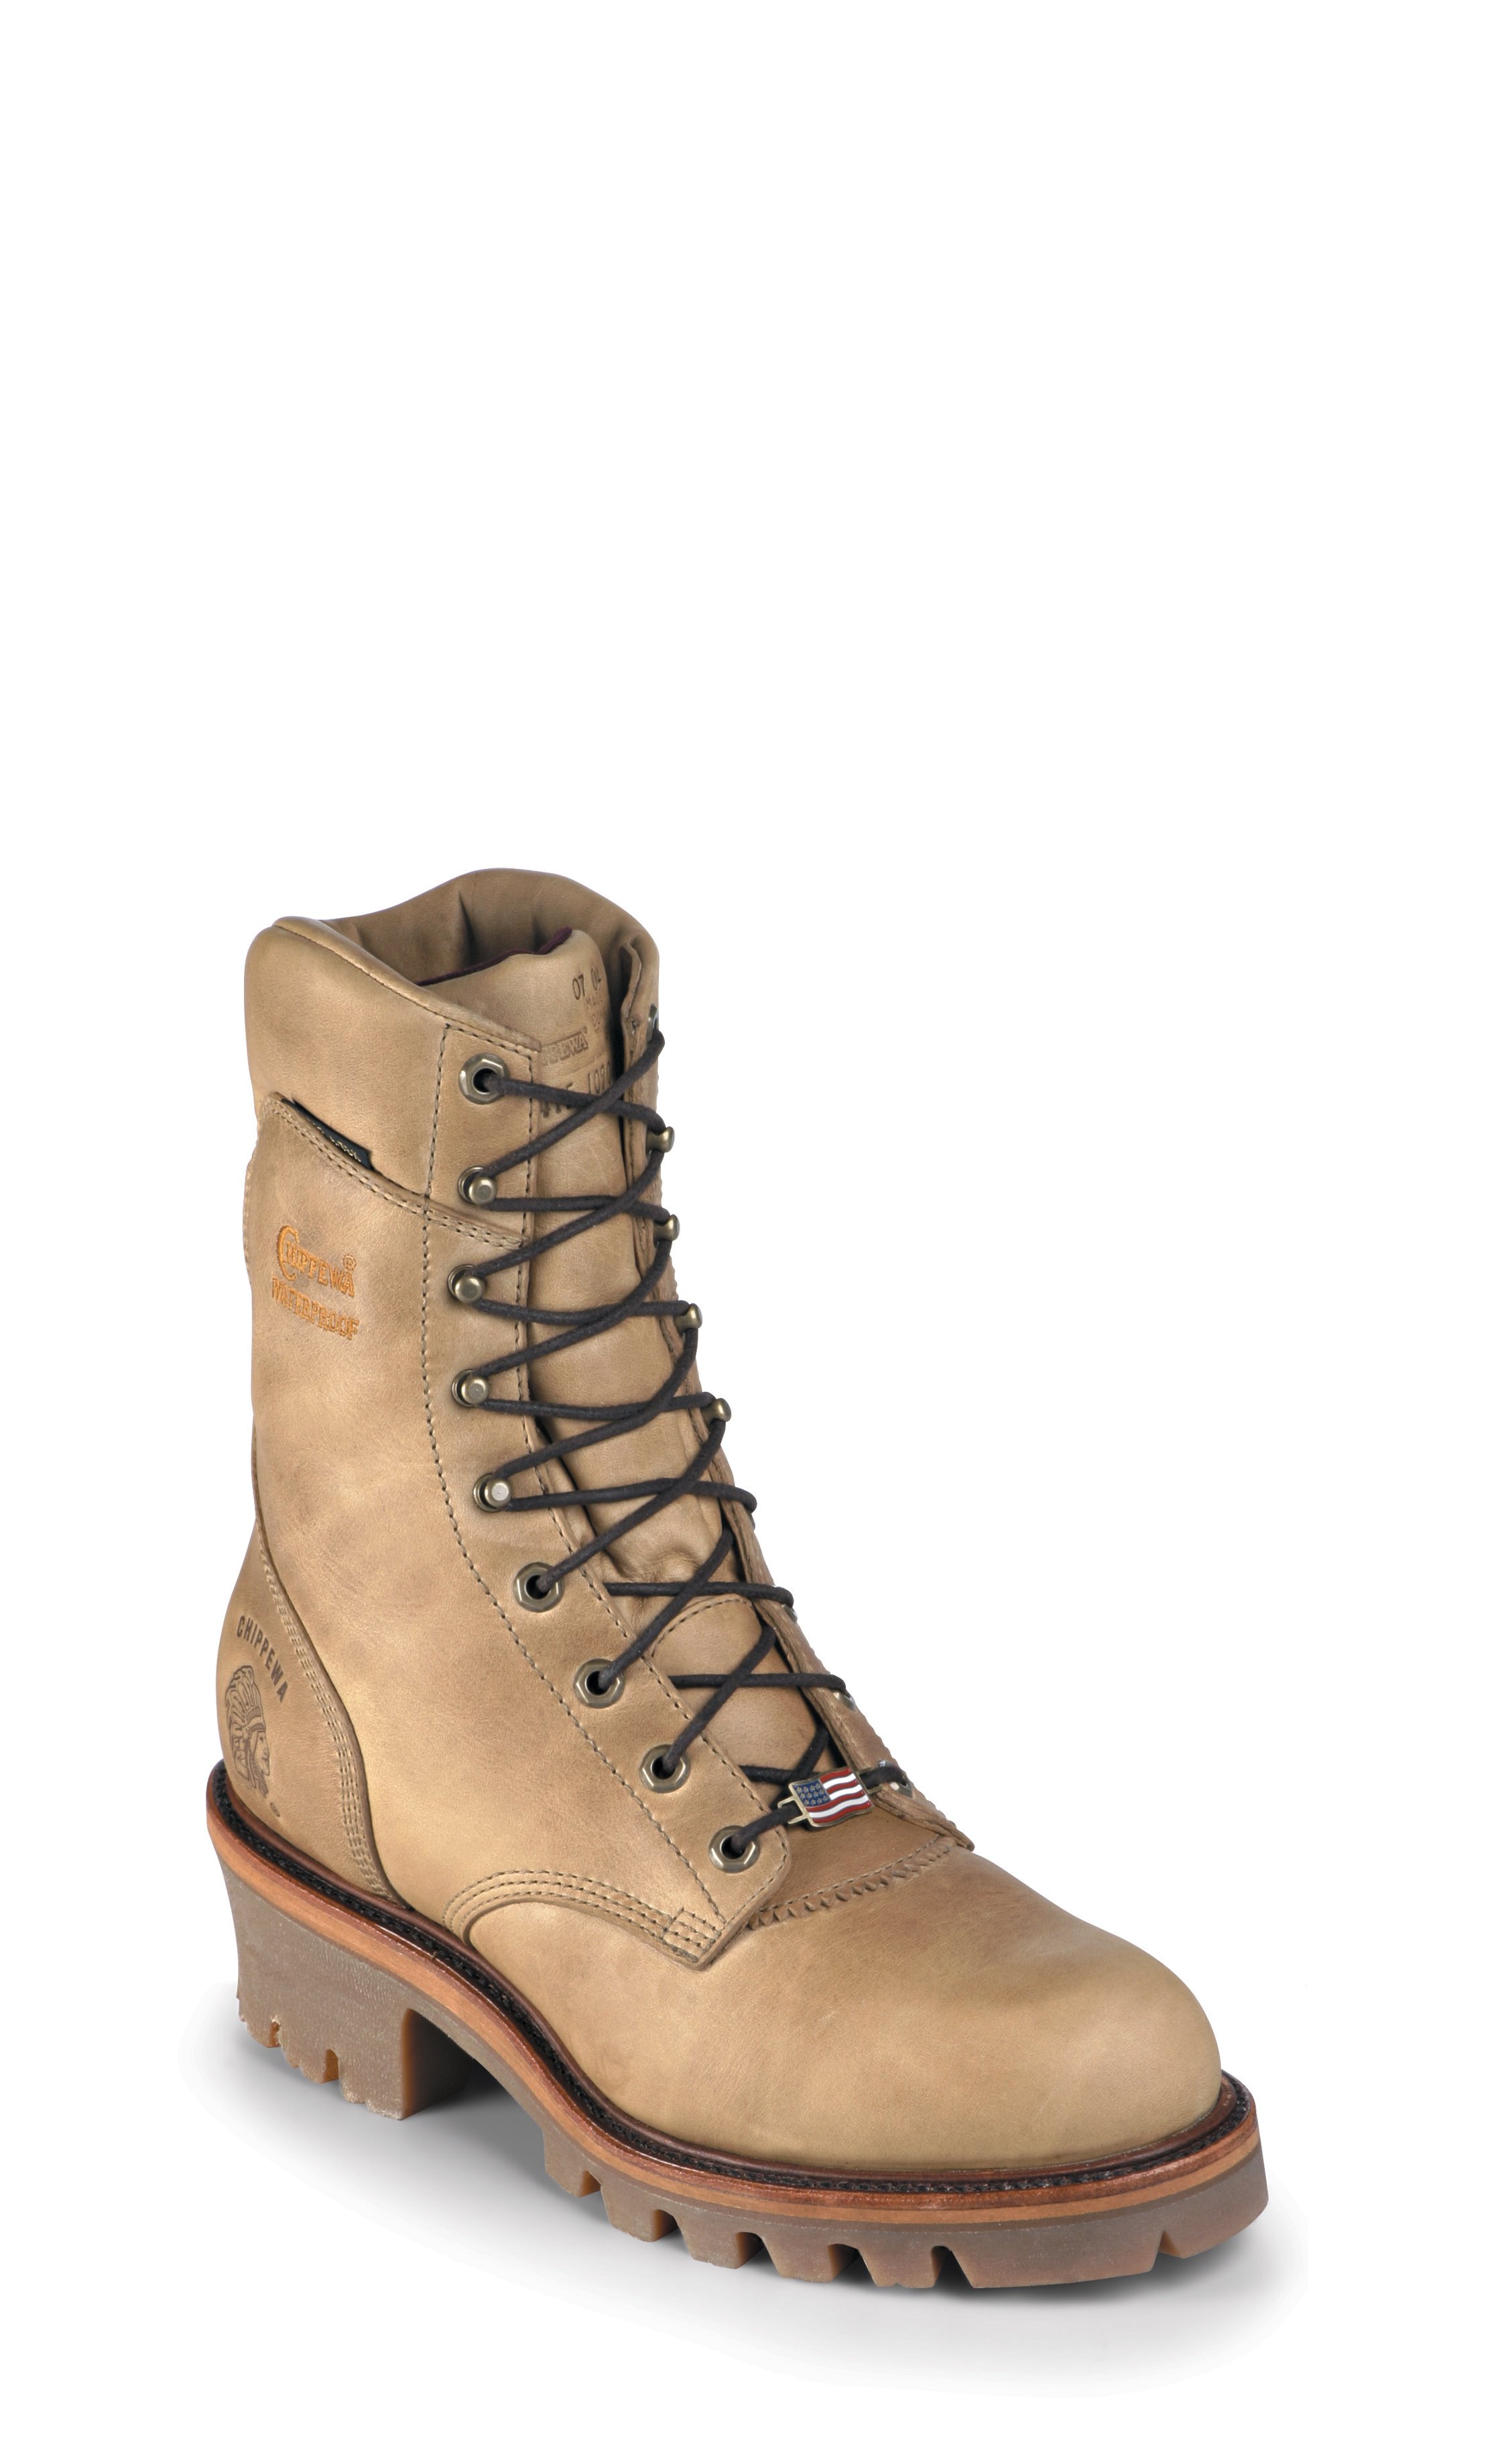 chippewa boots 25410